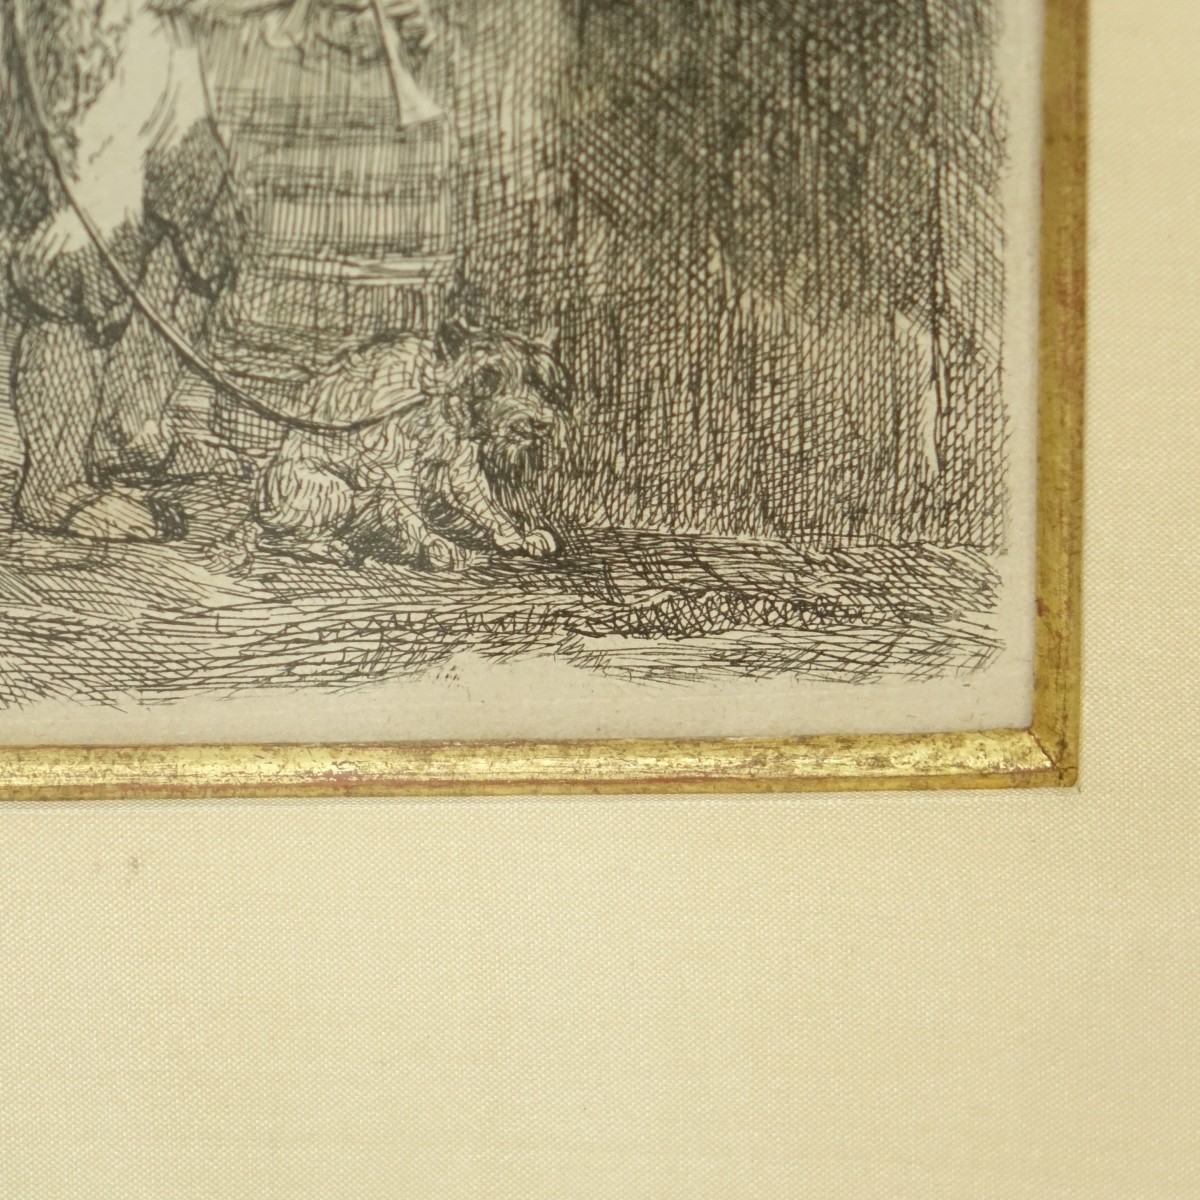 Rembrandt van Rijn (1609-1669) Etching